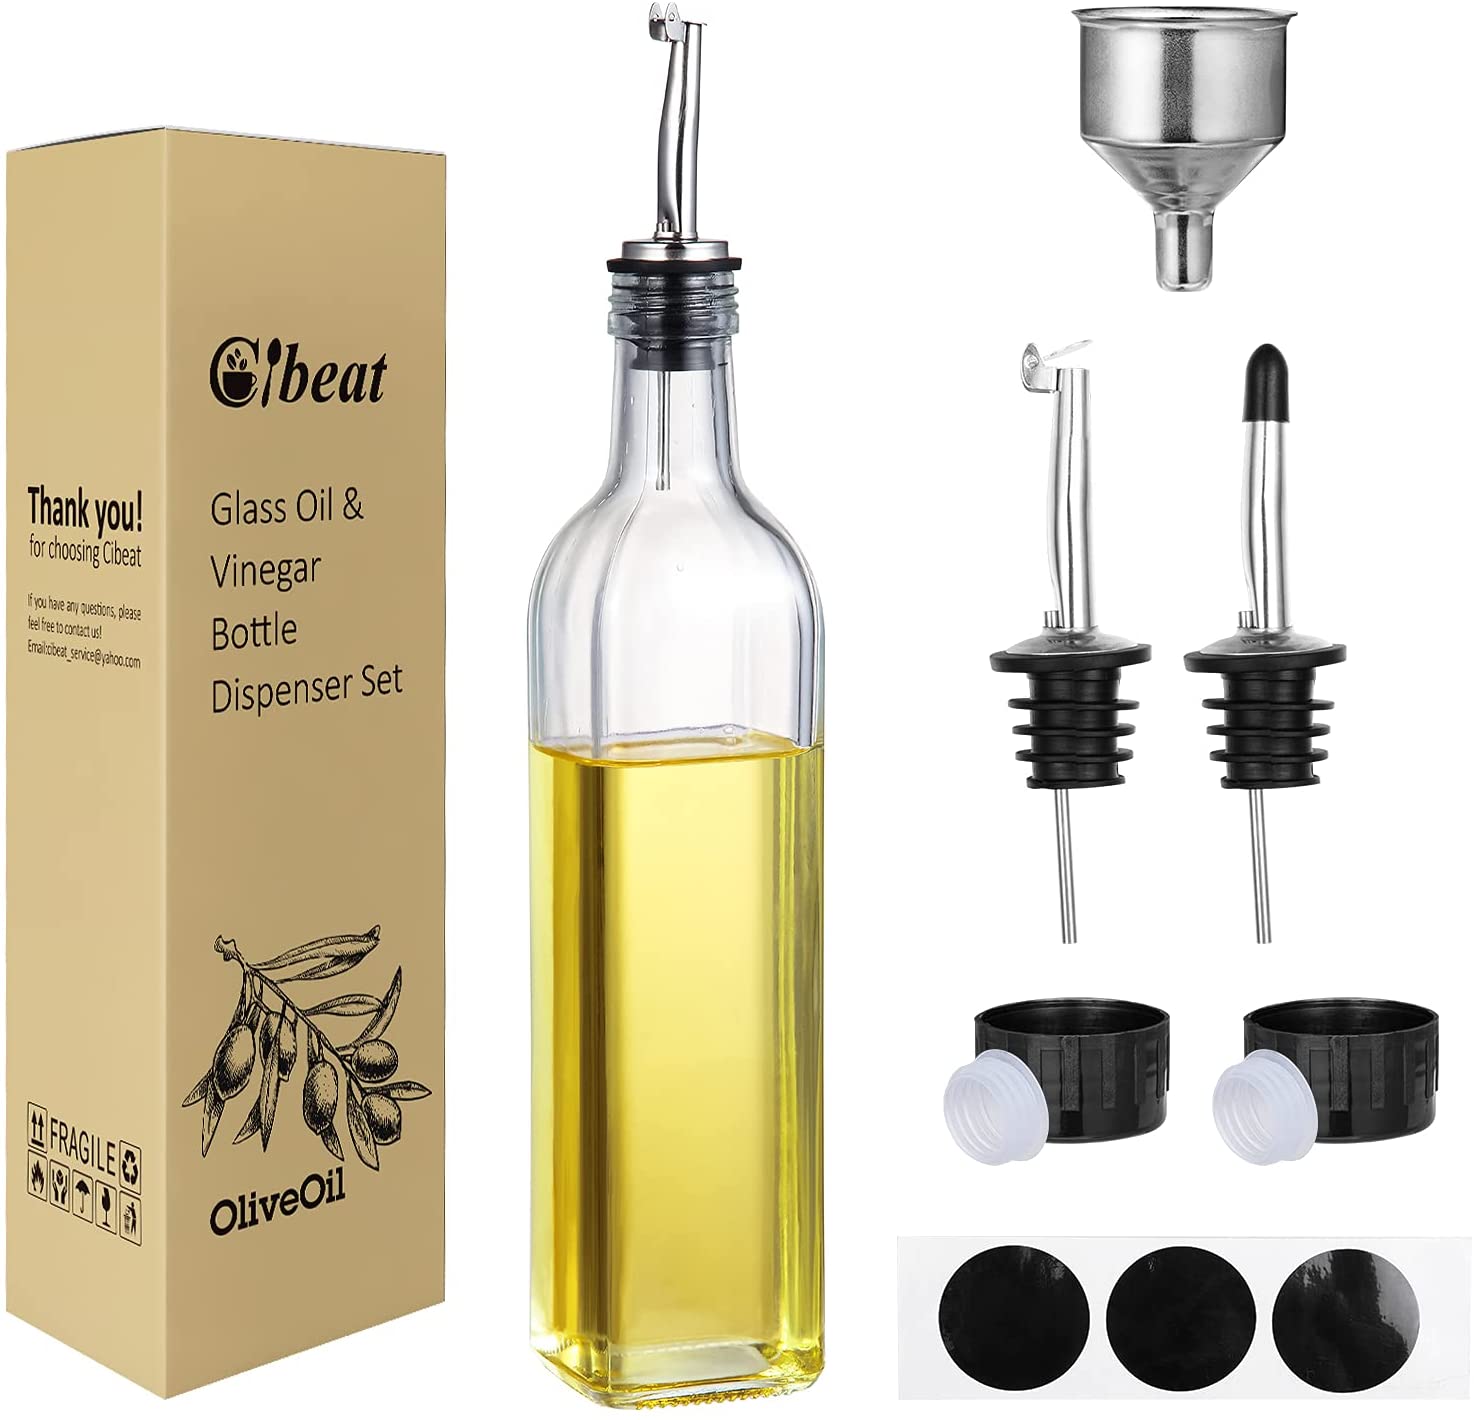 Cibeat Glass Olive Oil Dispenser Bottle